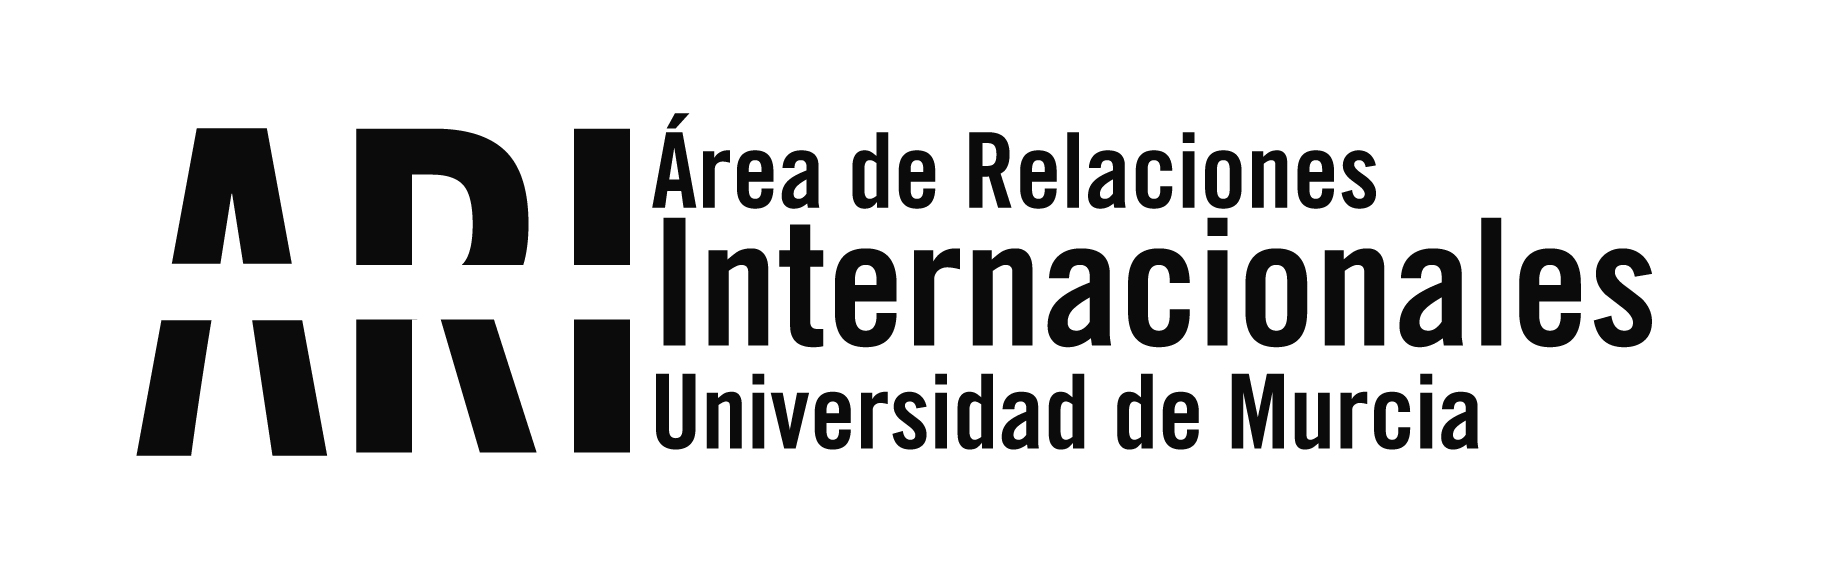 Bienvenida Universidad de Murcia Internacional 2012-2013 - Área de Relaciones Internacionales